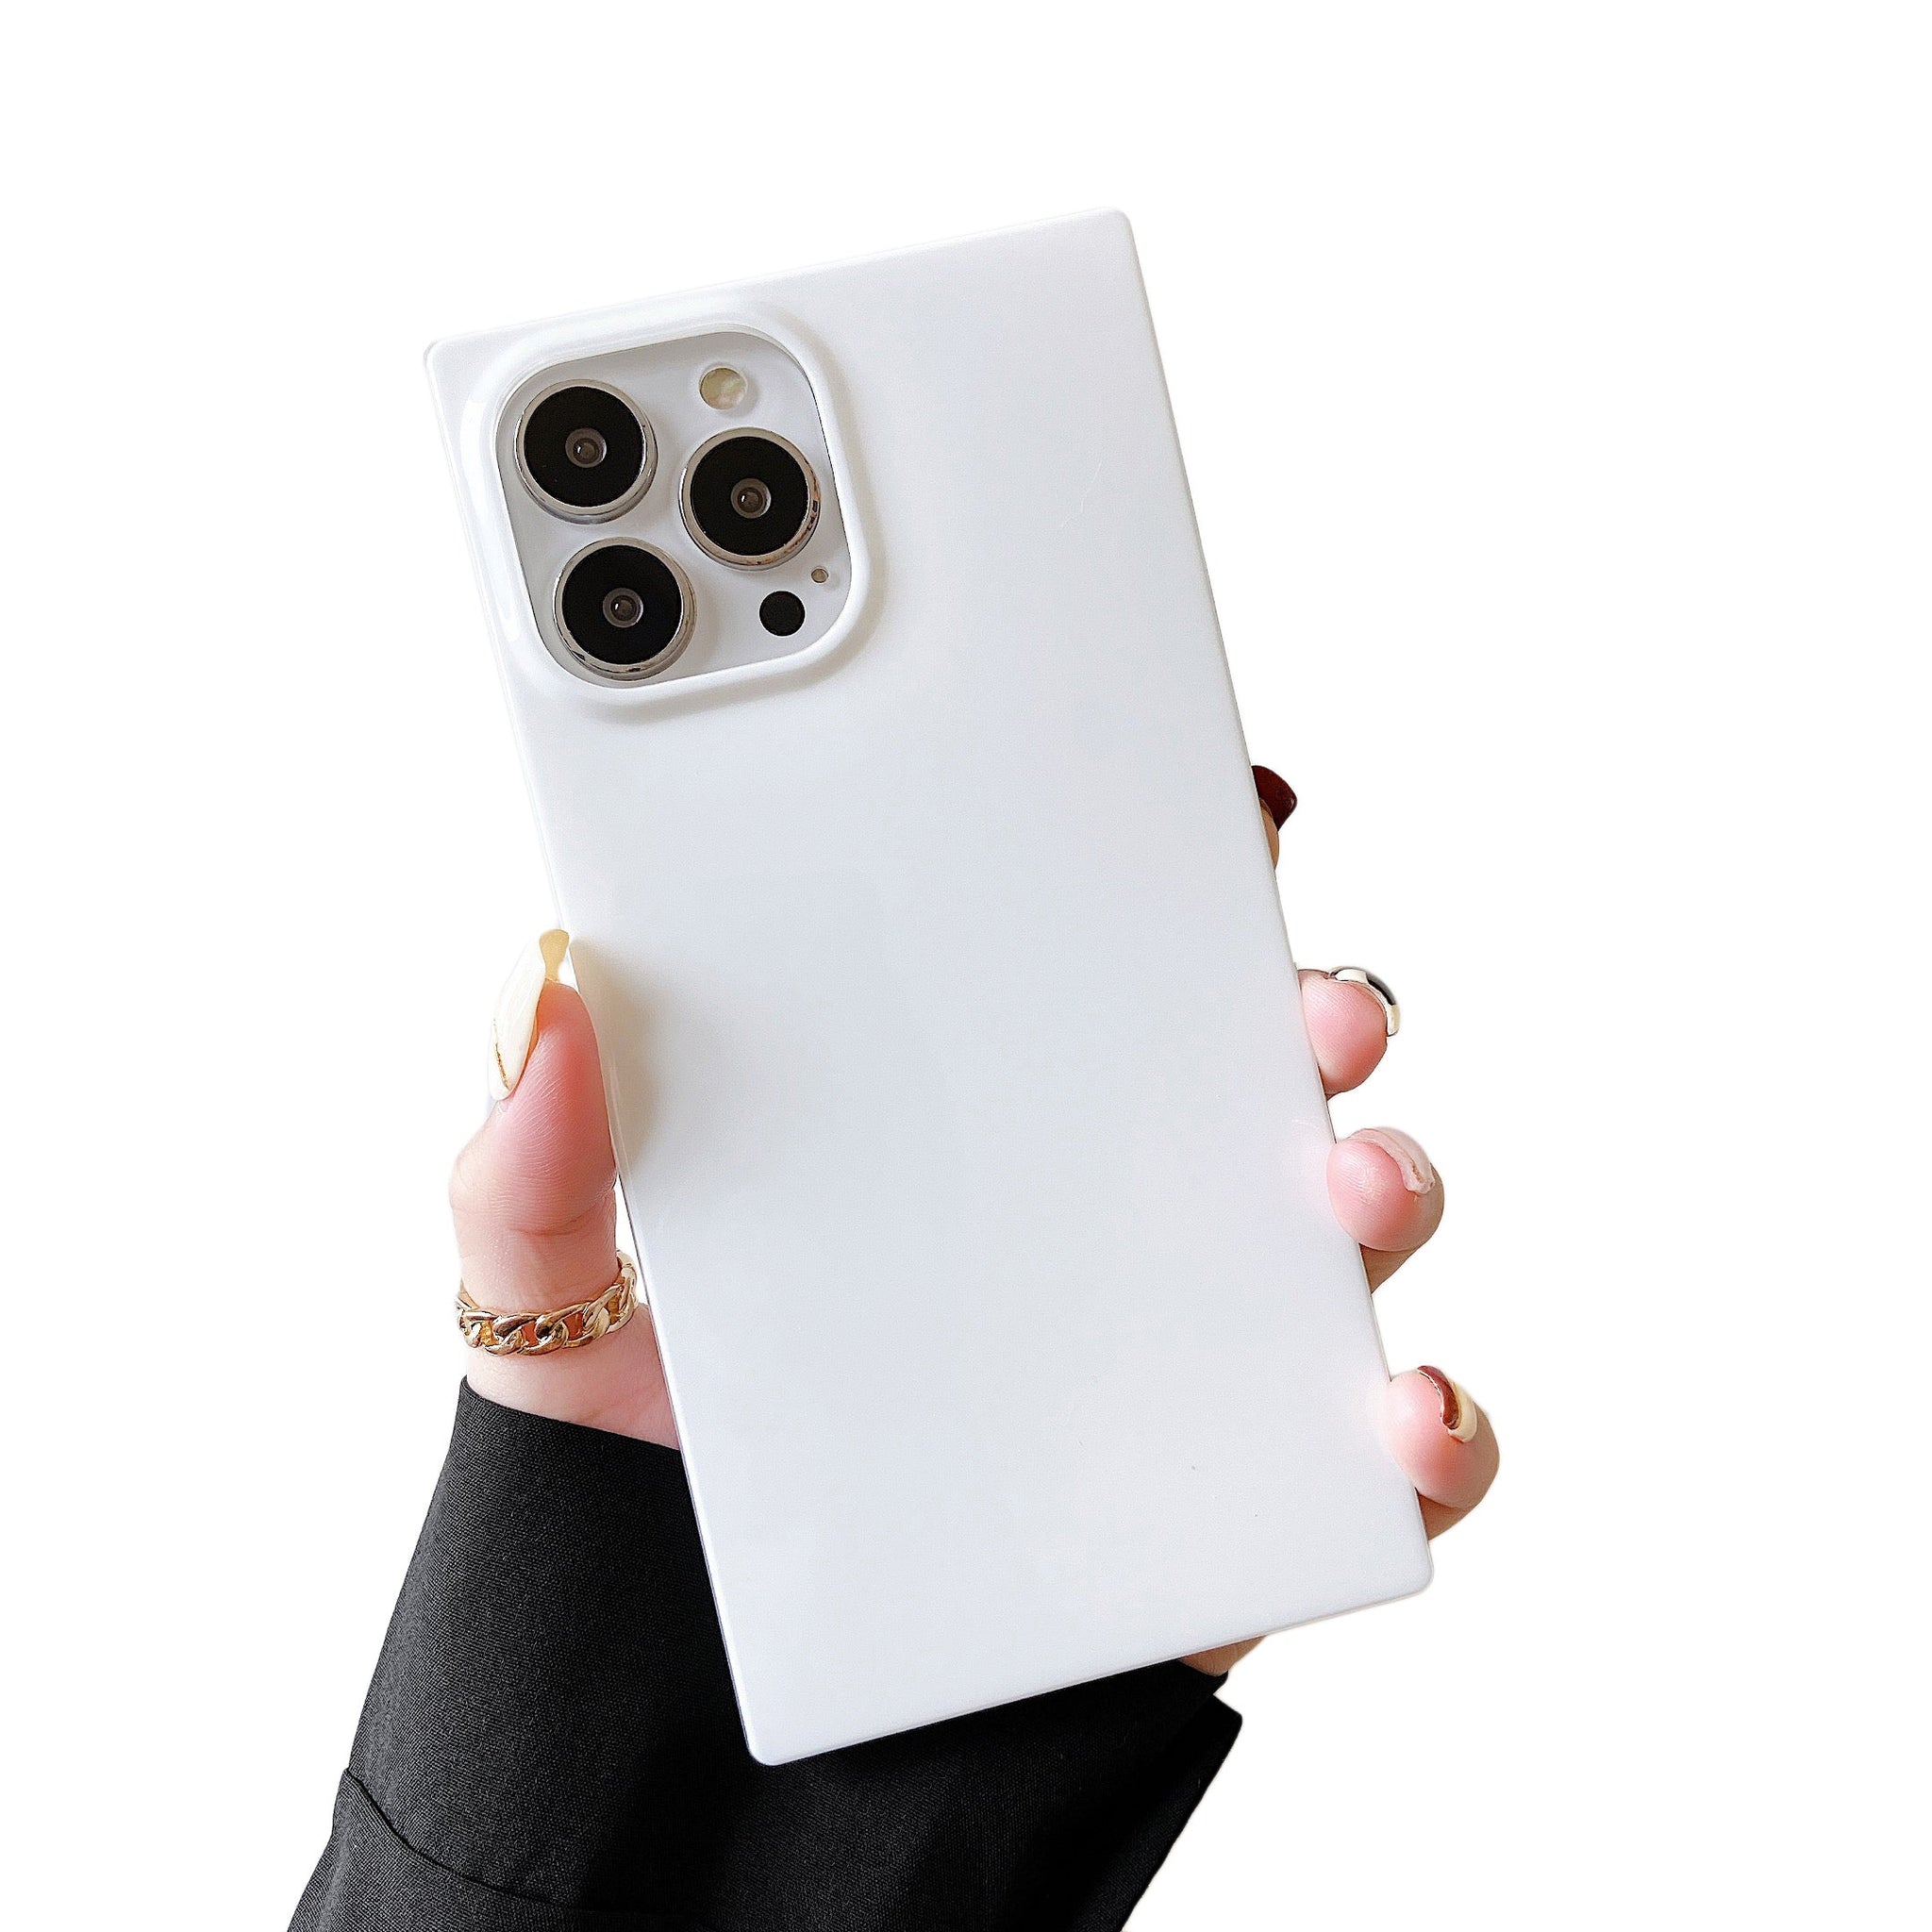 iPhone 11 Pro Max Case Square Neutral Plain Color (White)